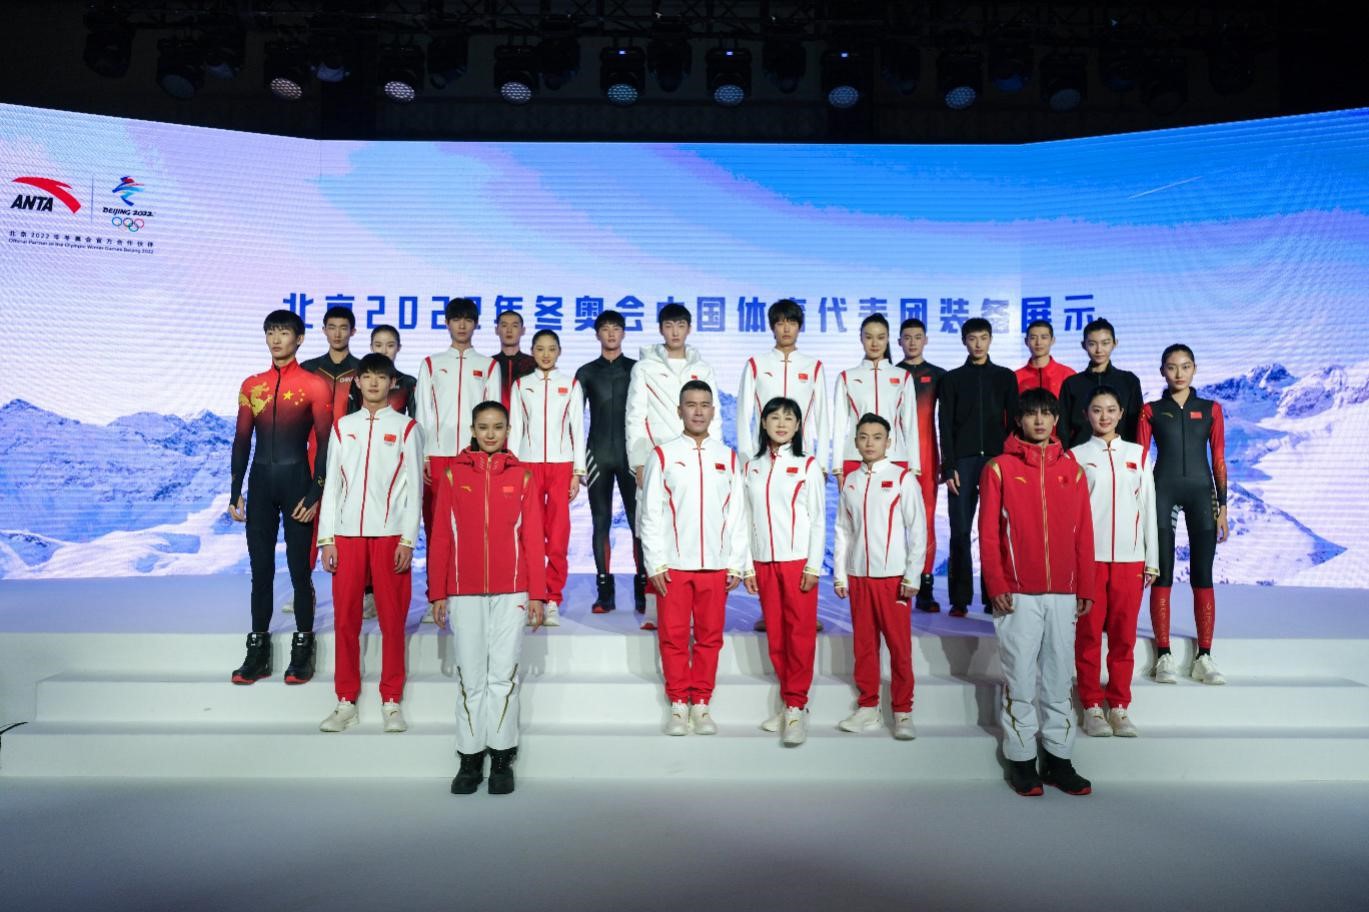 北京冬奥会装备亮相 15大赛项12支中国队穿安踏 安踏展示北京2022年冬奥会装备 科技助力中国冰雪健儿